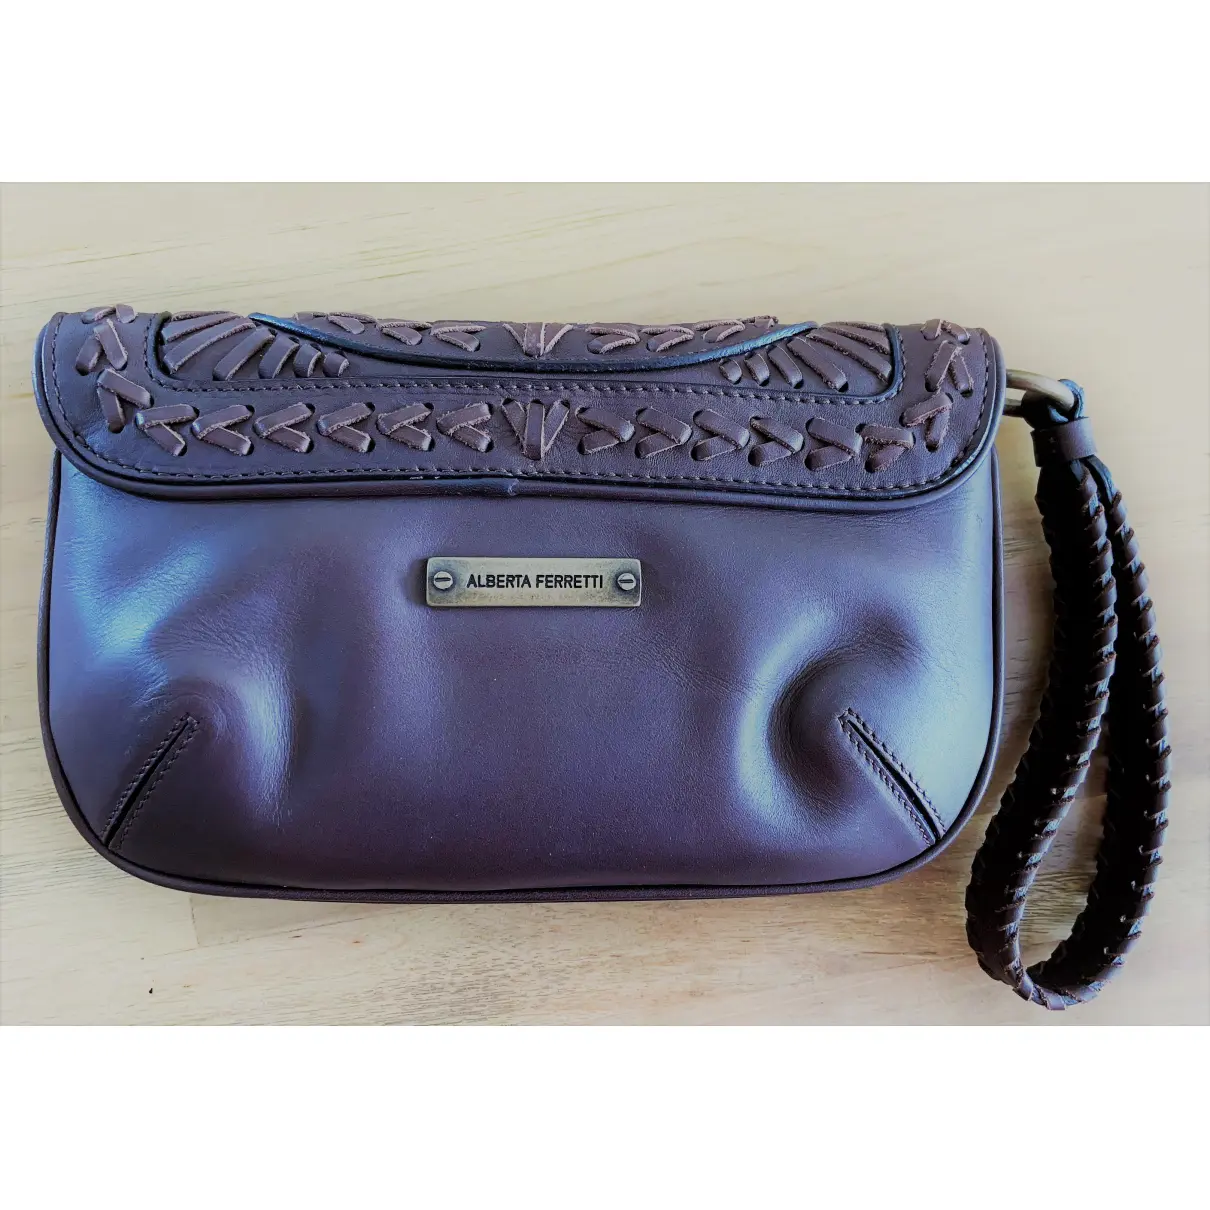 Buy Alberta Ferretti Leather clutch bag online